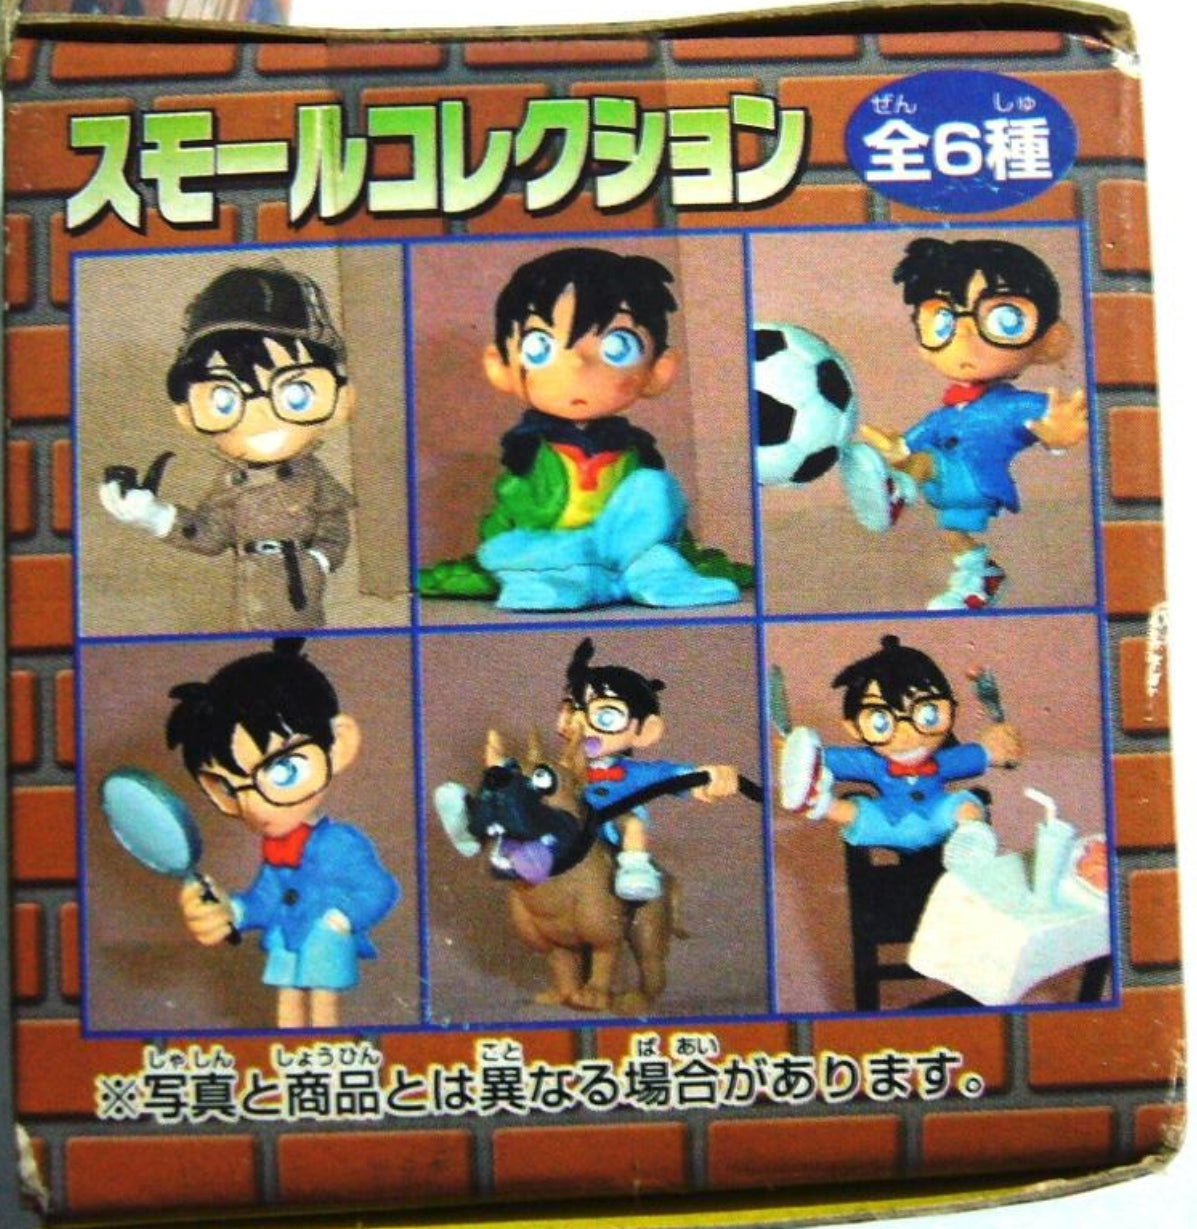 Romando Detective Meitantei Conan Small Collection Trading Figure Type A